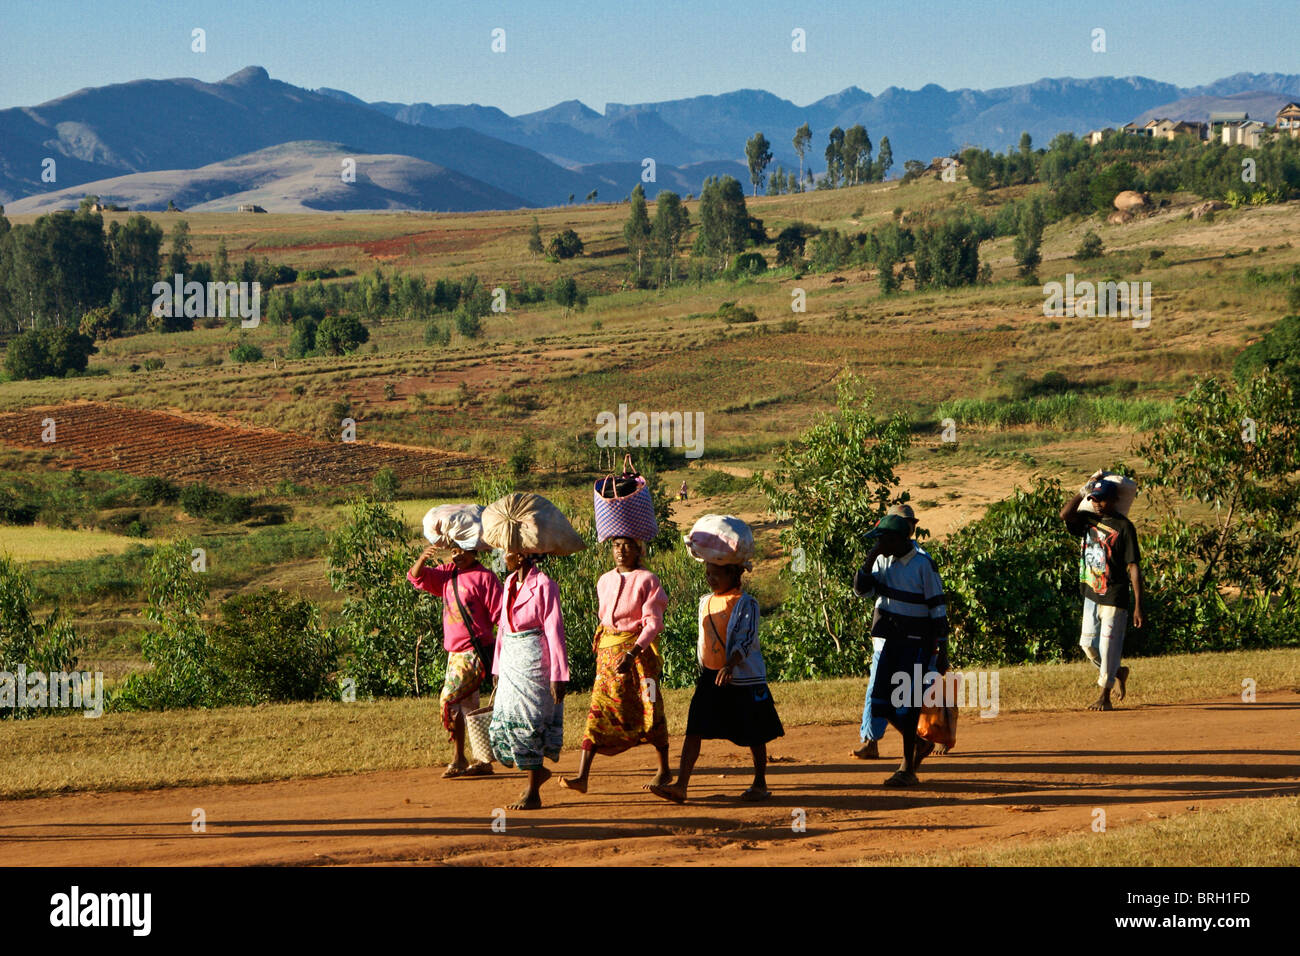 People walking to market, Ambalavao, Madagascar Stock Photo